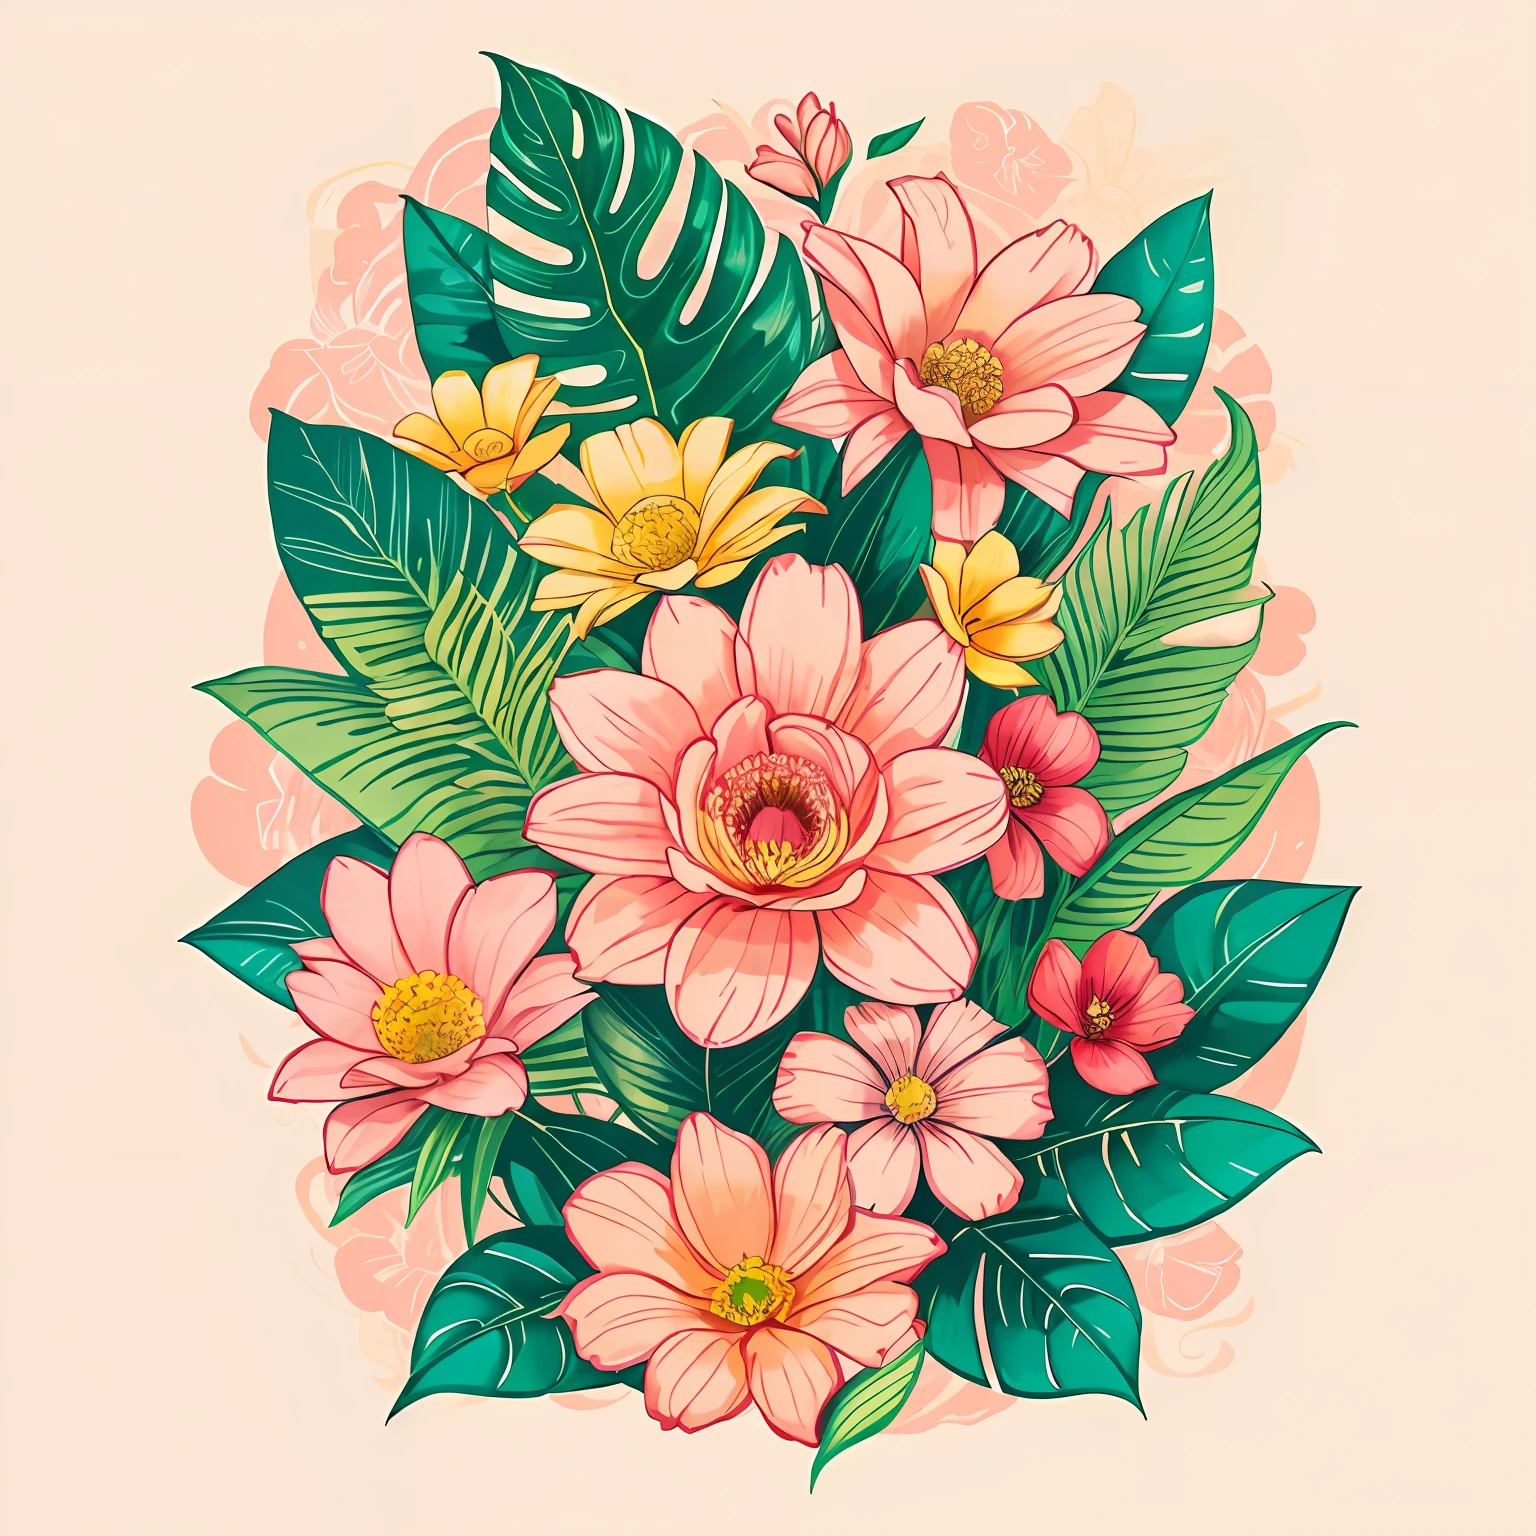 florales，Impresión，beige suave，rosa pastel，plantas tropicales,ilustración plana，GUI，maximalismo，combinación de colores brillantes